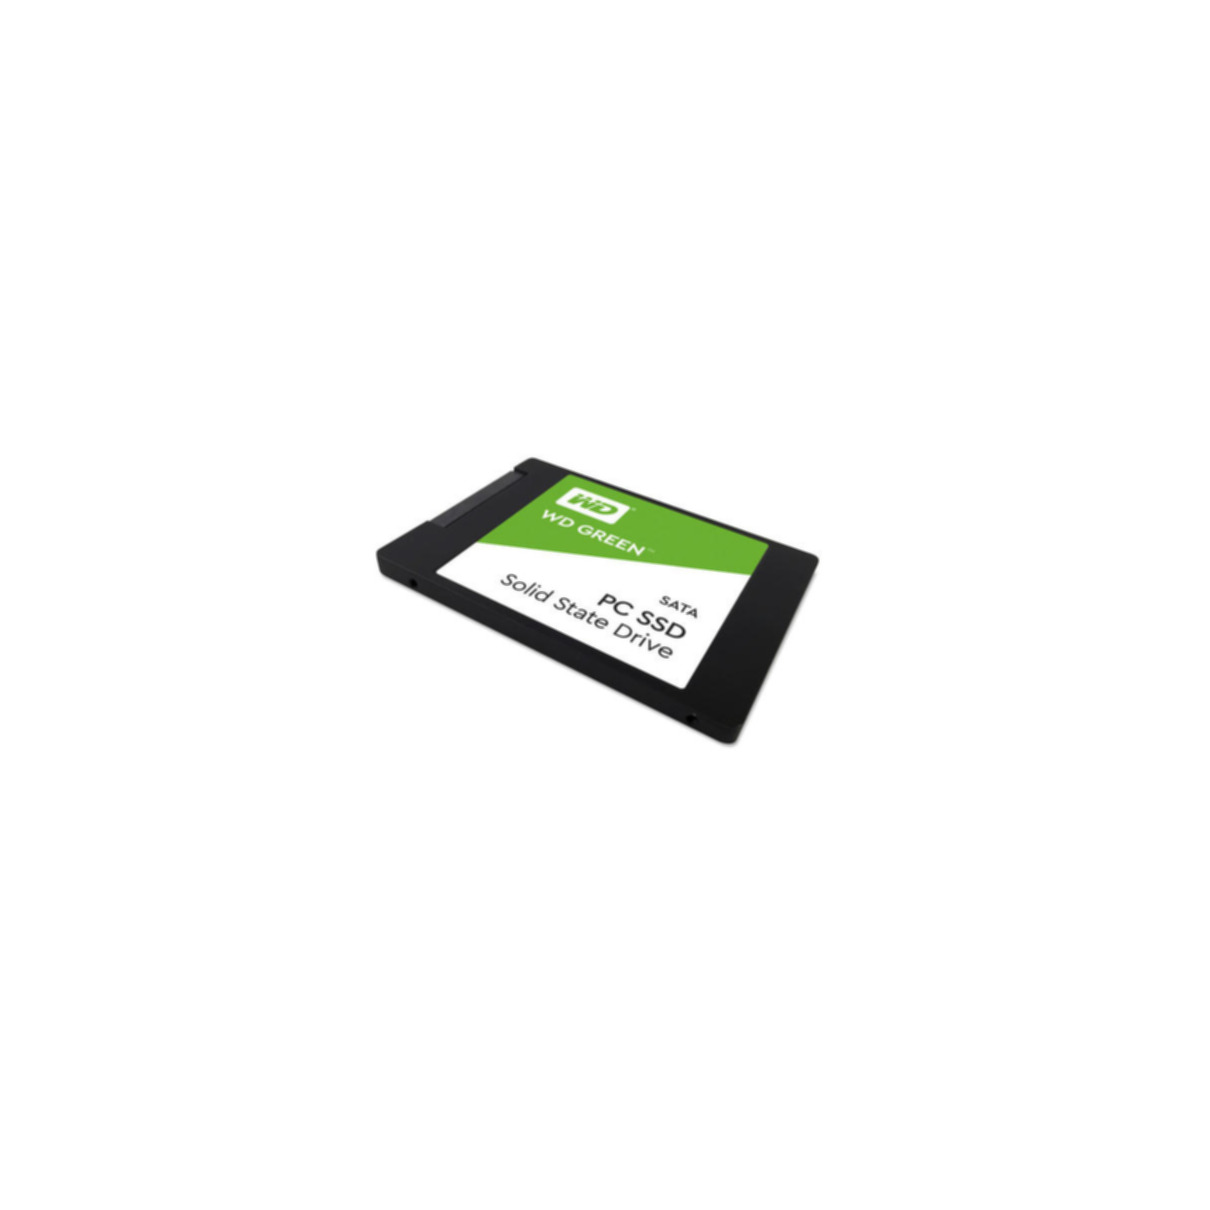 WESTERN DIGITAL Green, 240 GB, 2,5 Zoll, SSD, intern